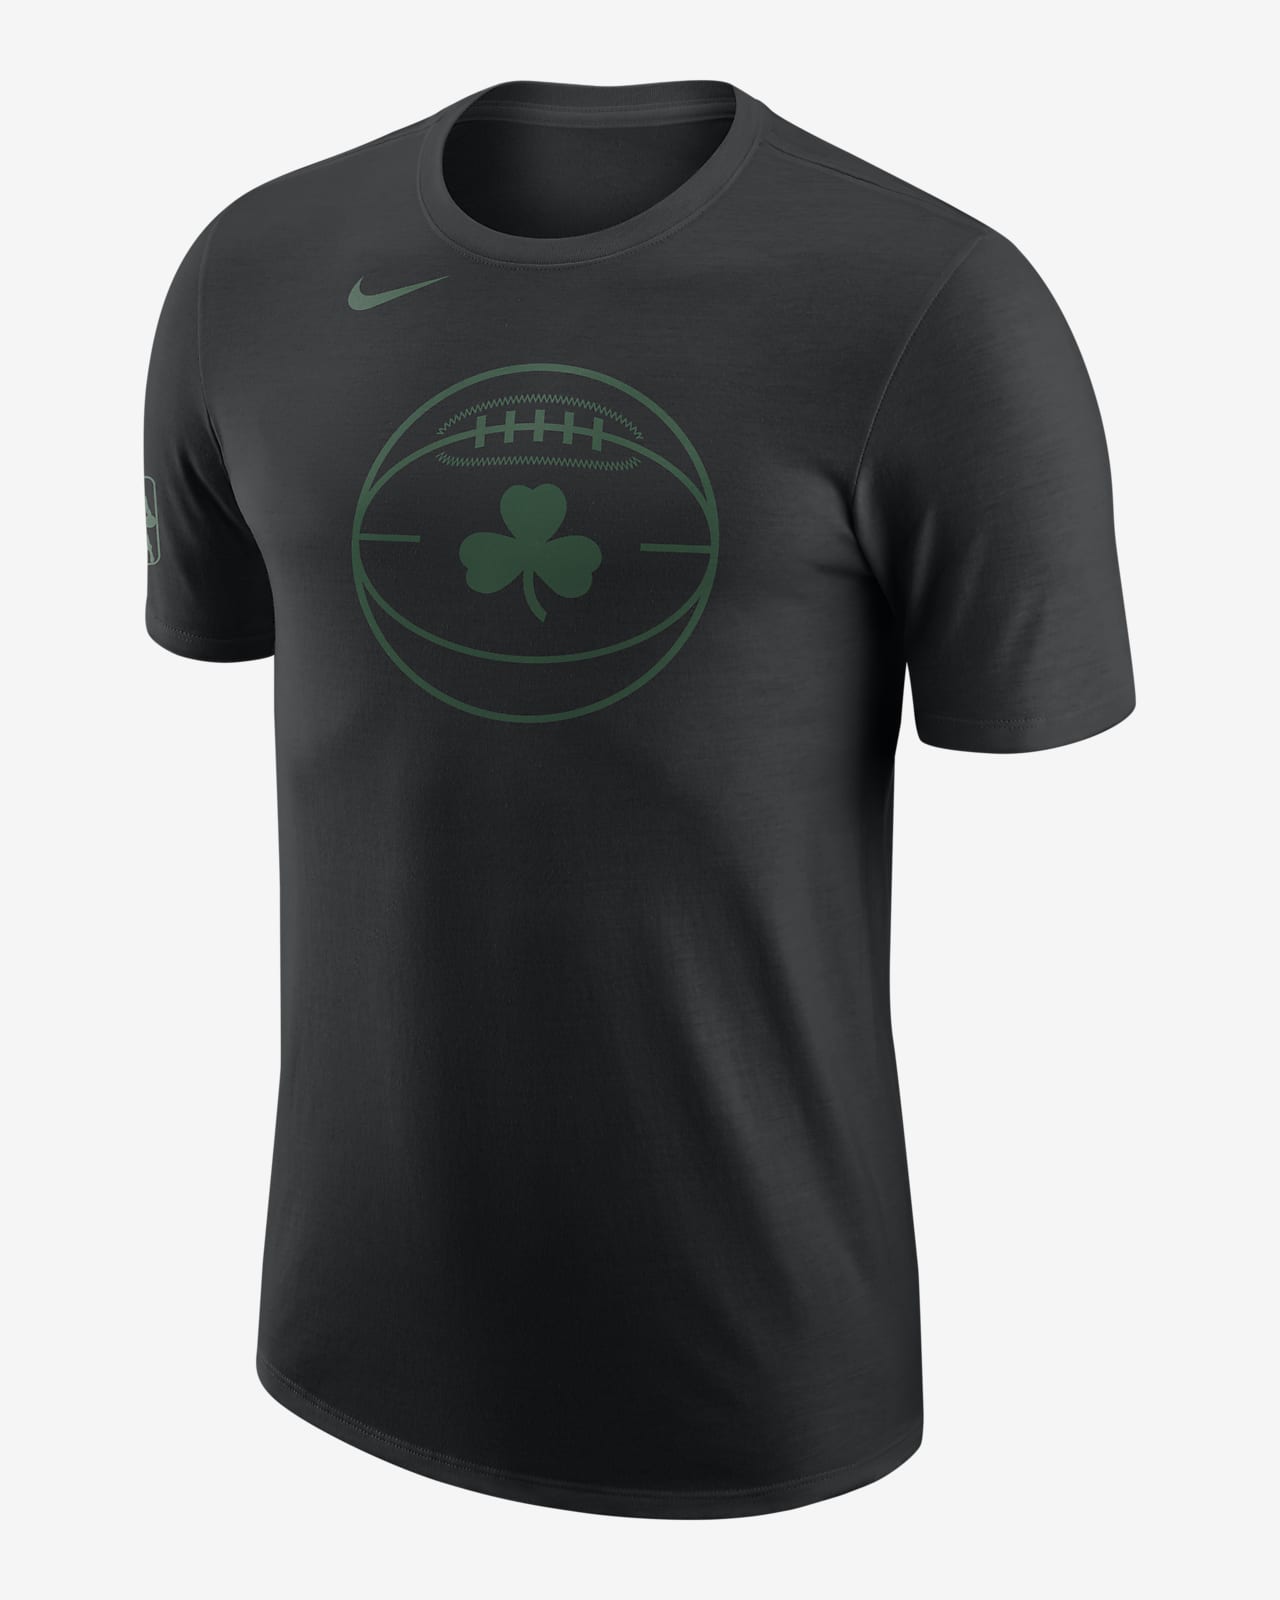 Boston Celtics City Edition Men's Nike NBA T-Shirt